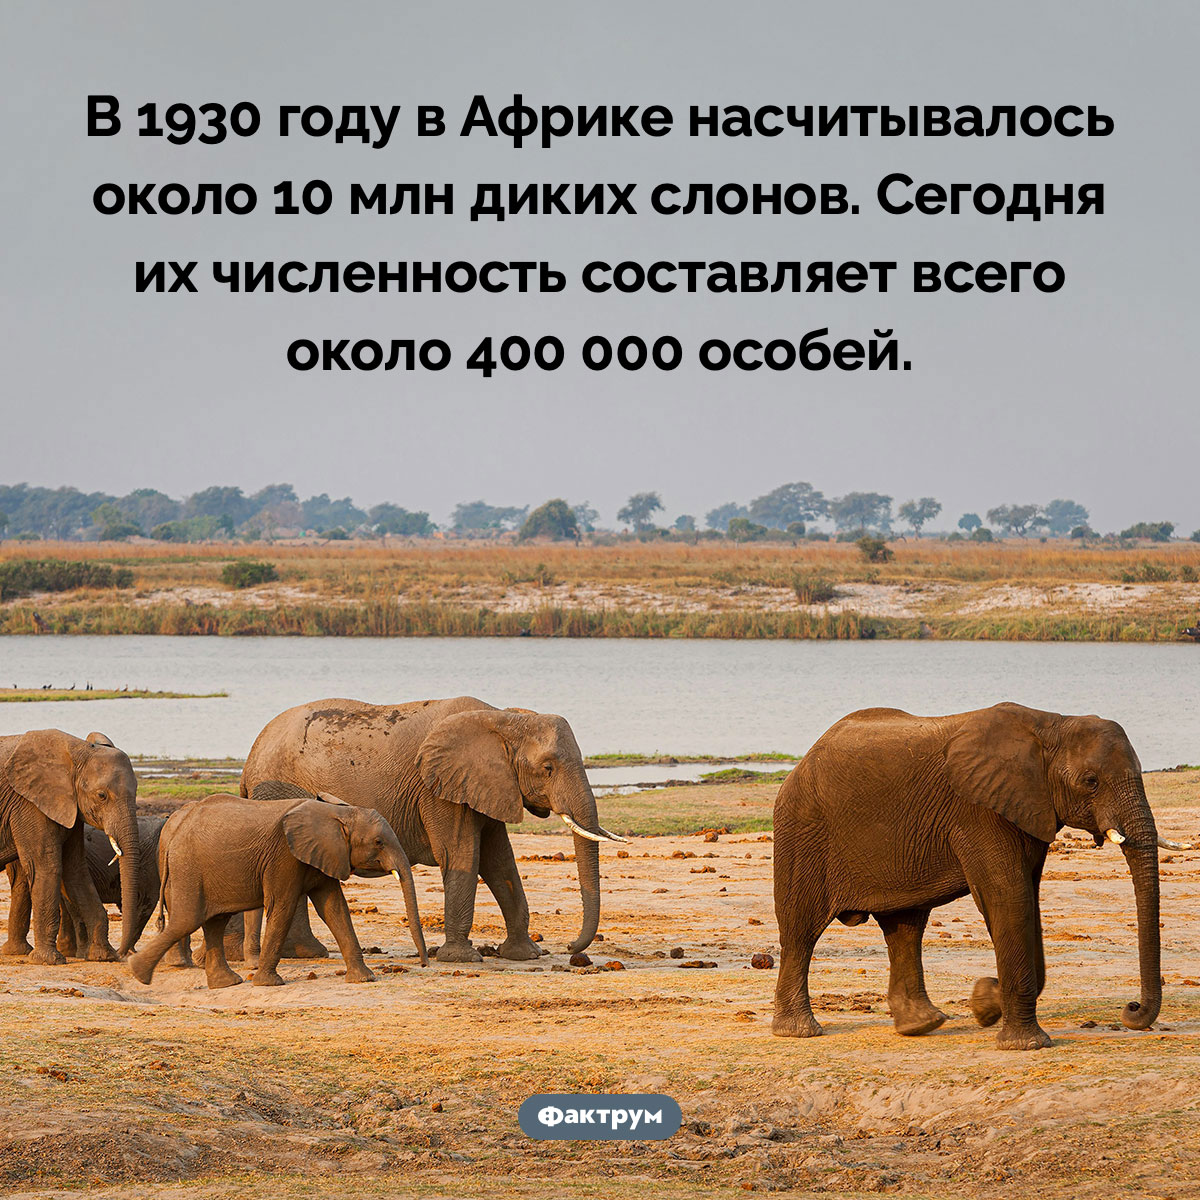 За последние сто лет популяция африканских слонов сильно сократилась. В 1930 году в Африке насчитывалось около 10 млн диких слонов. Сегодня их численность составляет всего около 400 000 особей.